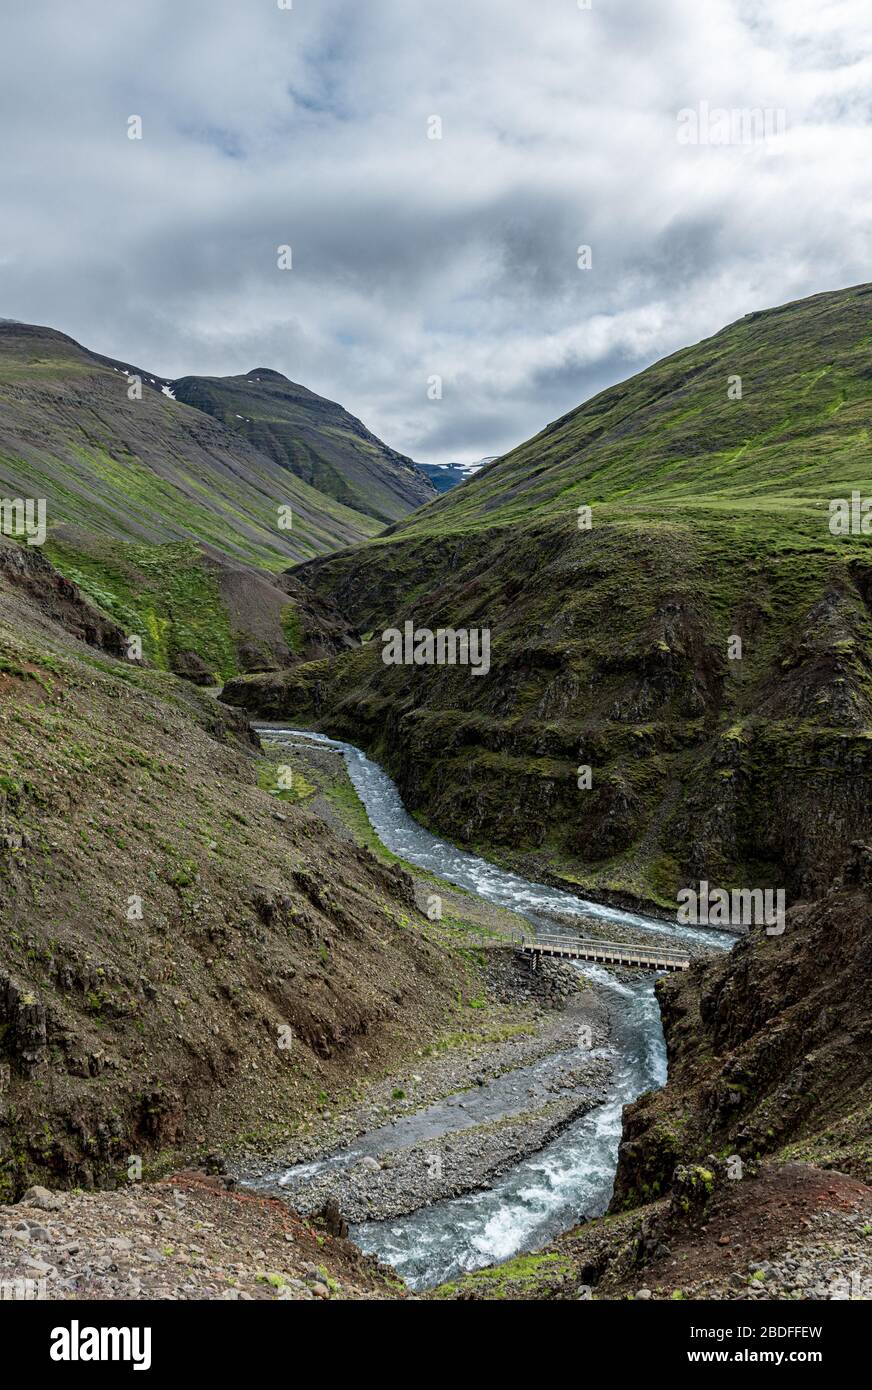 Isländische Landschaft im nördlichen Teil des Landes an einem bewölkten Tag Stockfoto